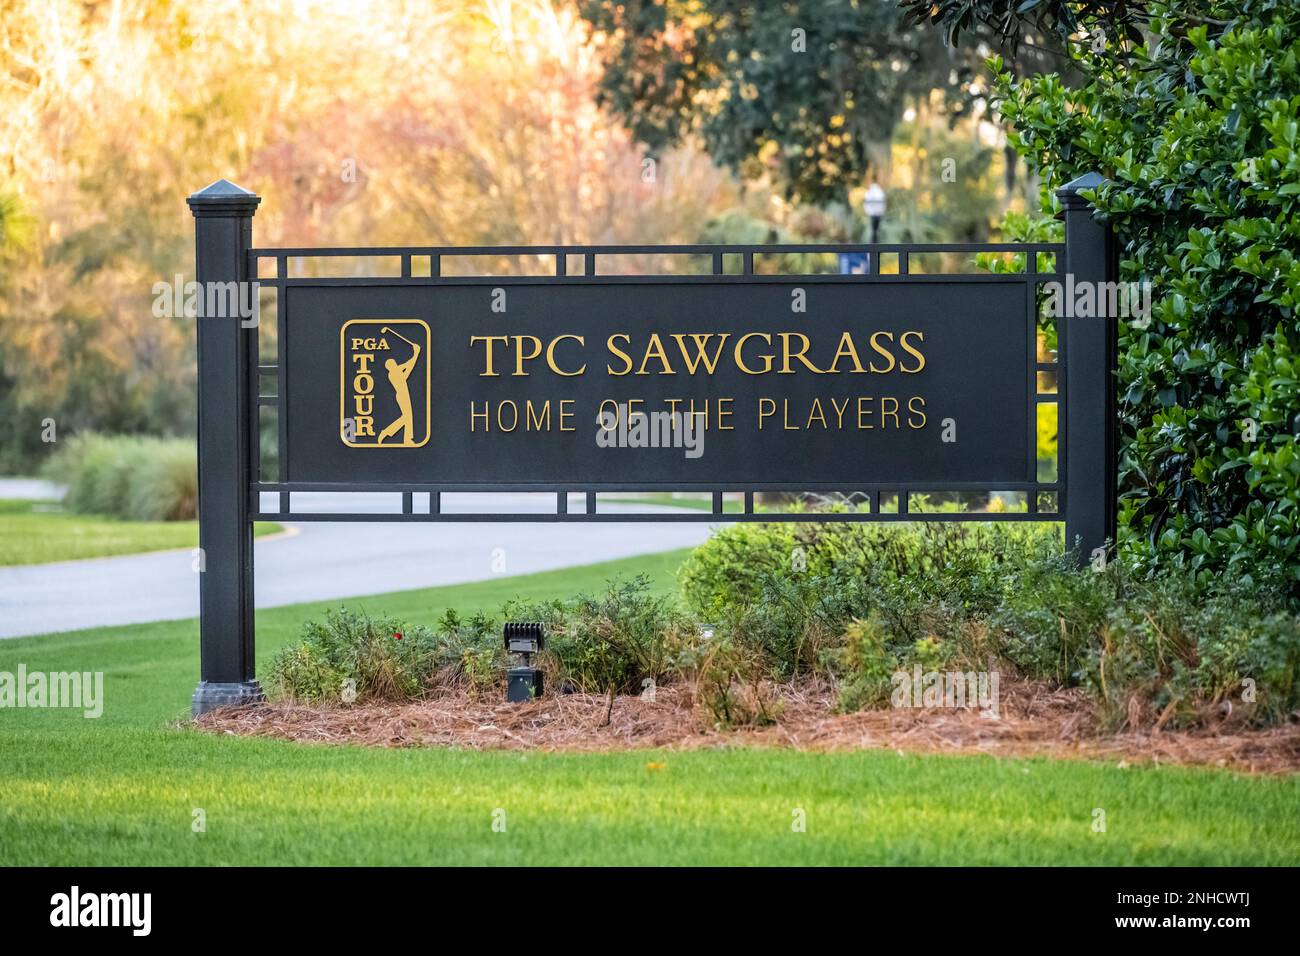 Eintritt zum TPC Sawgrass, einem PGA Tour Course und Austragungsort DES PLAYERS Championship Golfturniers in Ponte Vedra Beach, Florida. (USA) Stockfoto